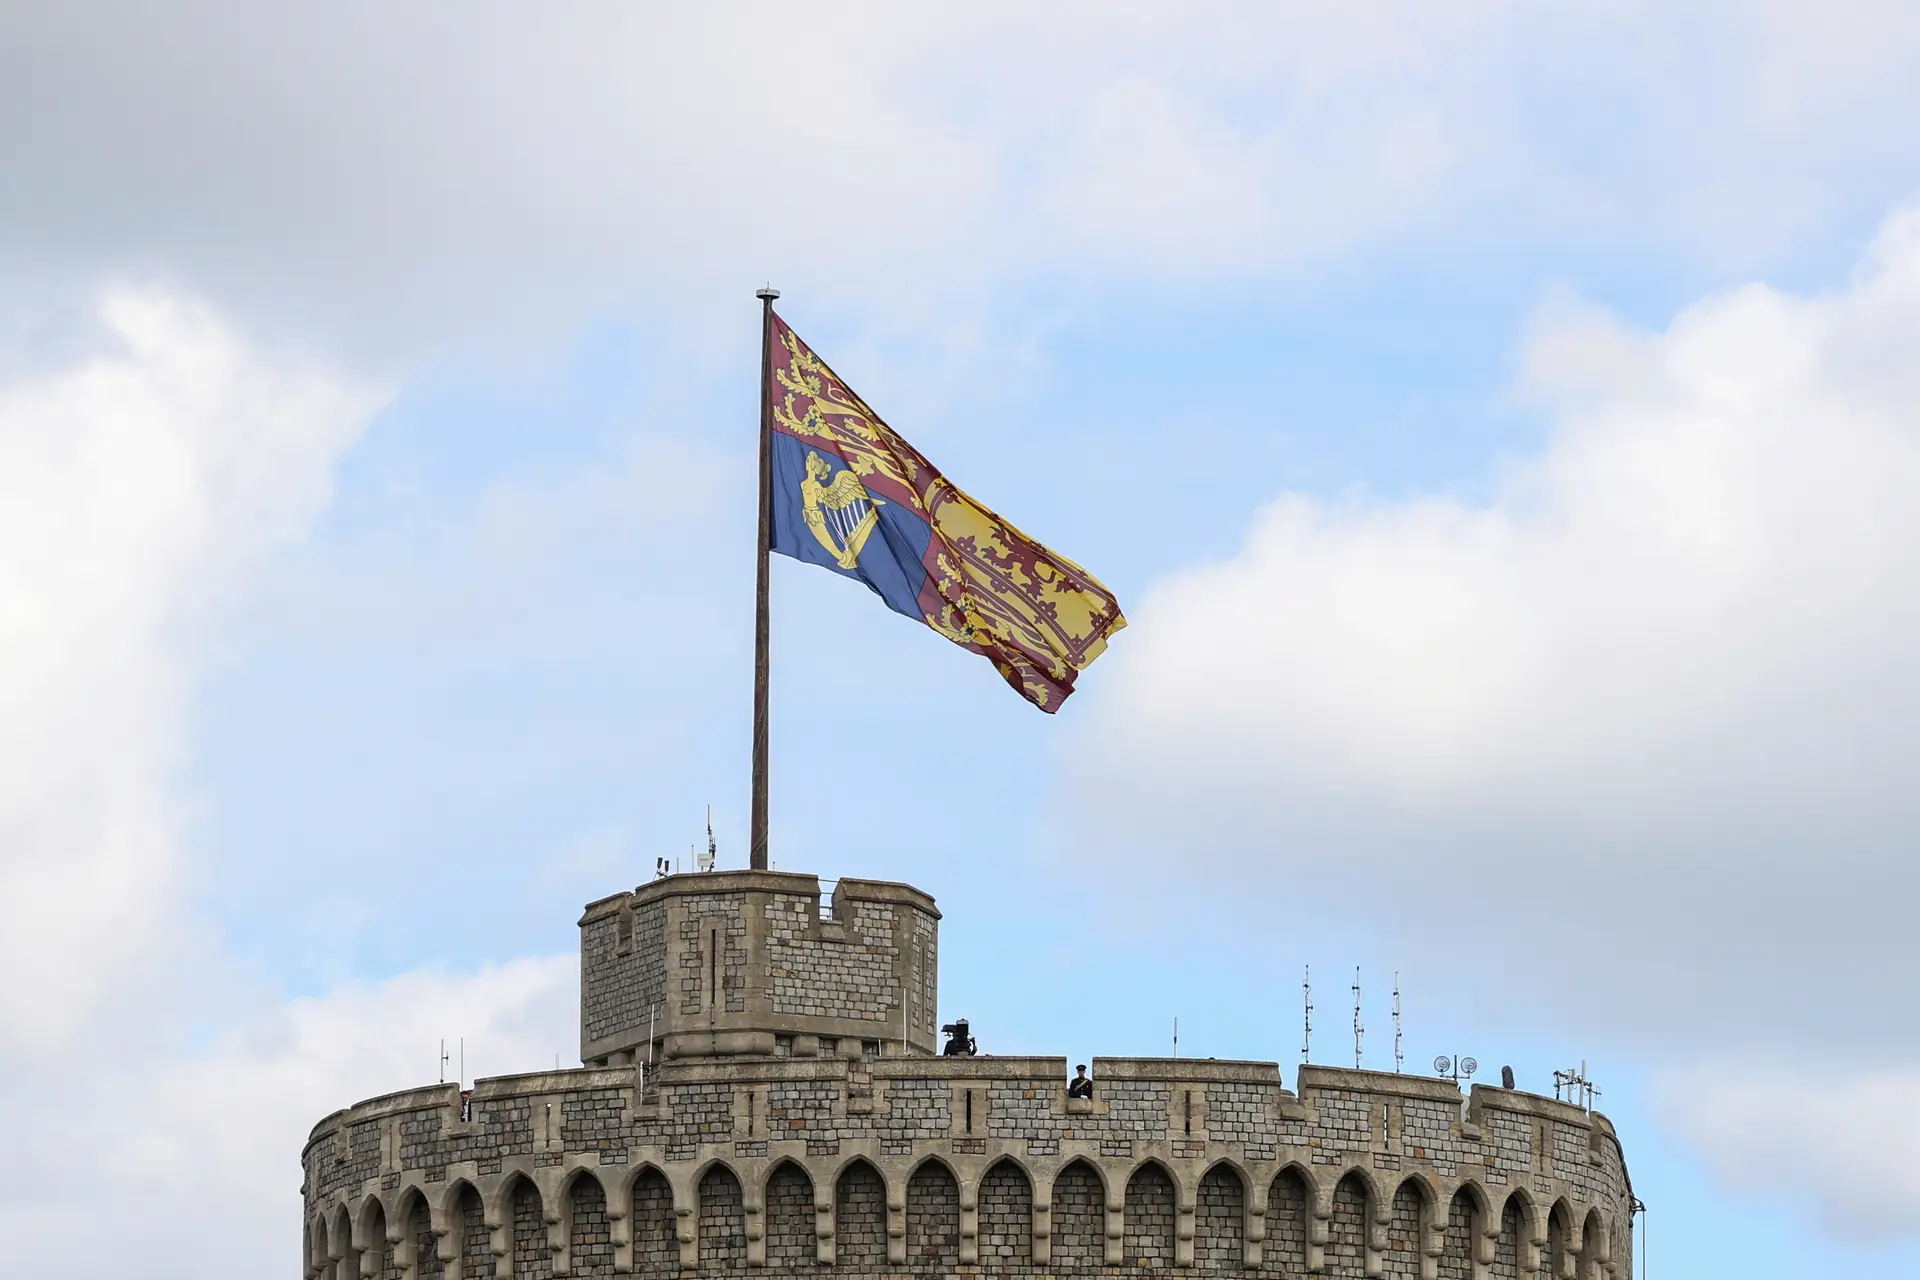 Castelo de Windsor, Reino Unido.